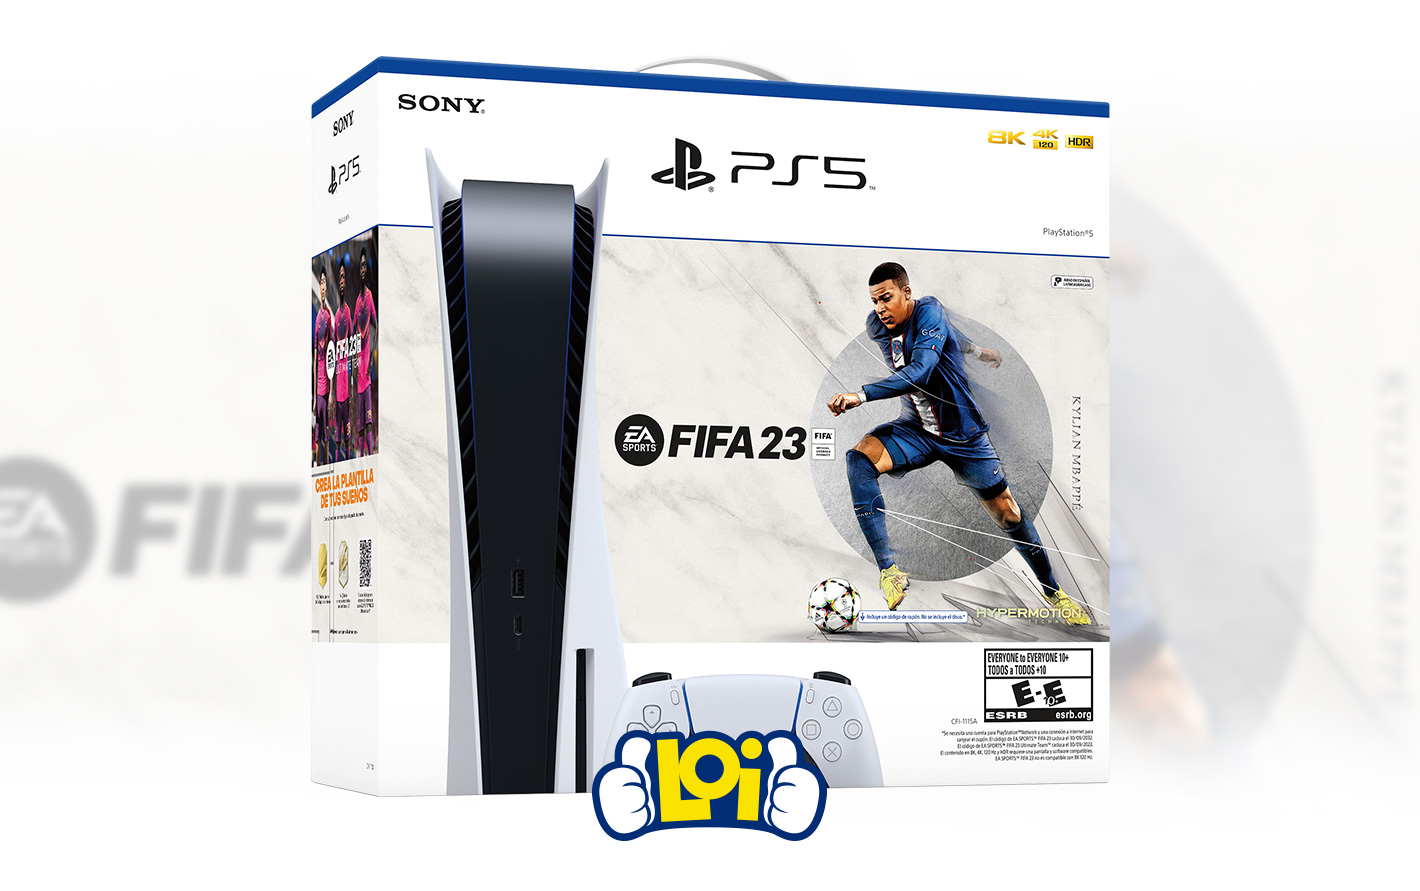 Playstation 5 lector + FIFA 23. PLAYSTATION 5